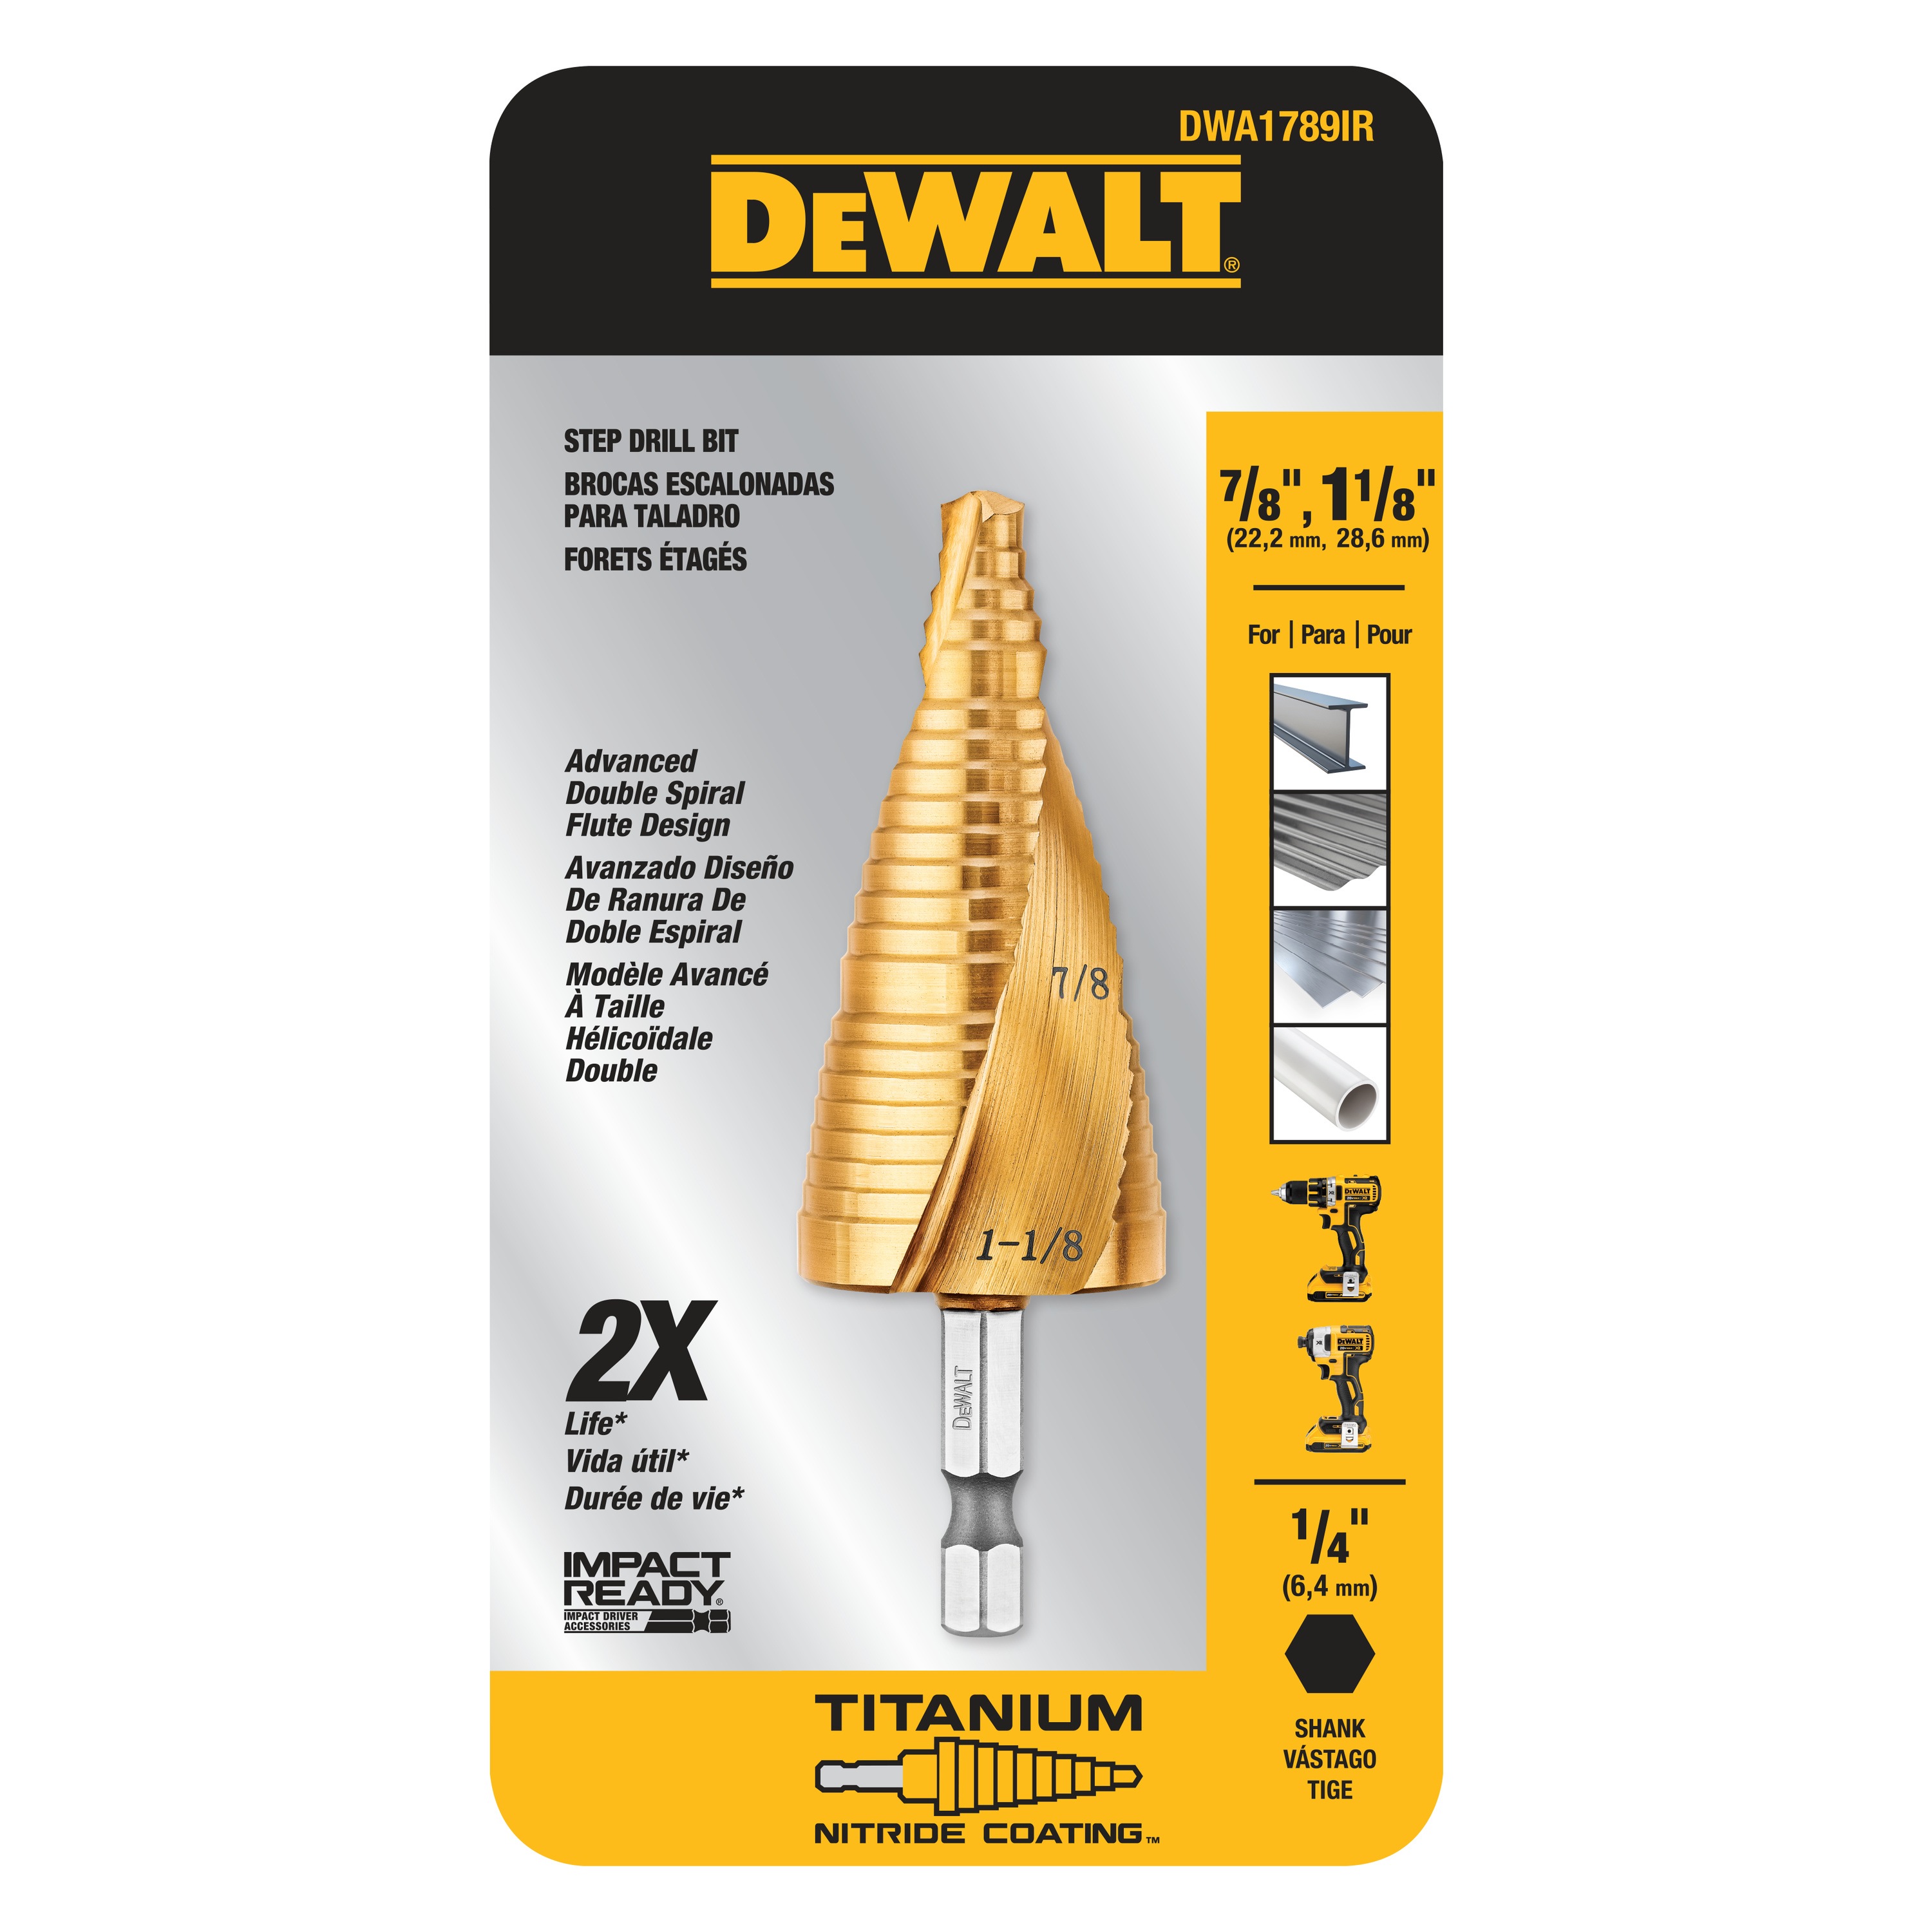 DEWALT - 78 118 IMPACT READY Step Drill Bit - DWA1789IR